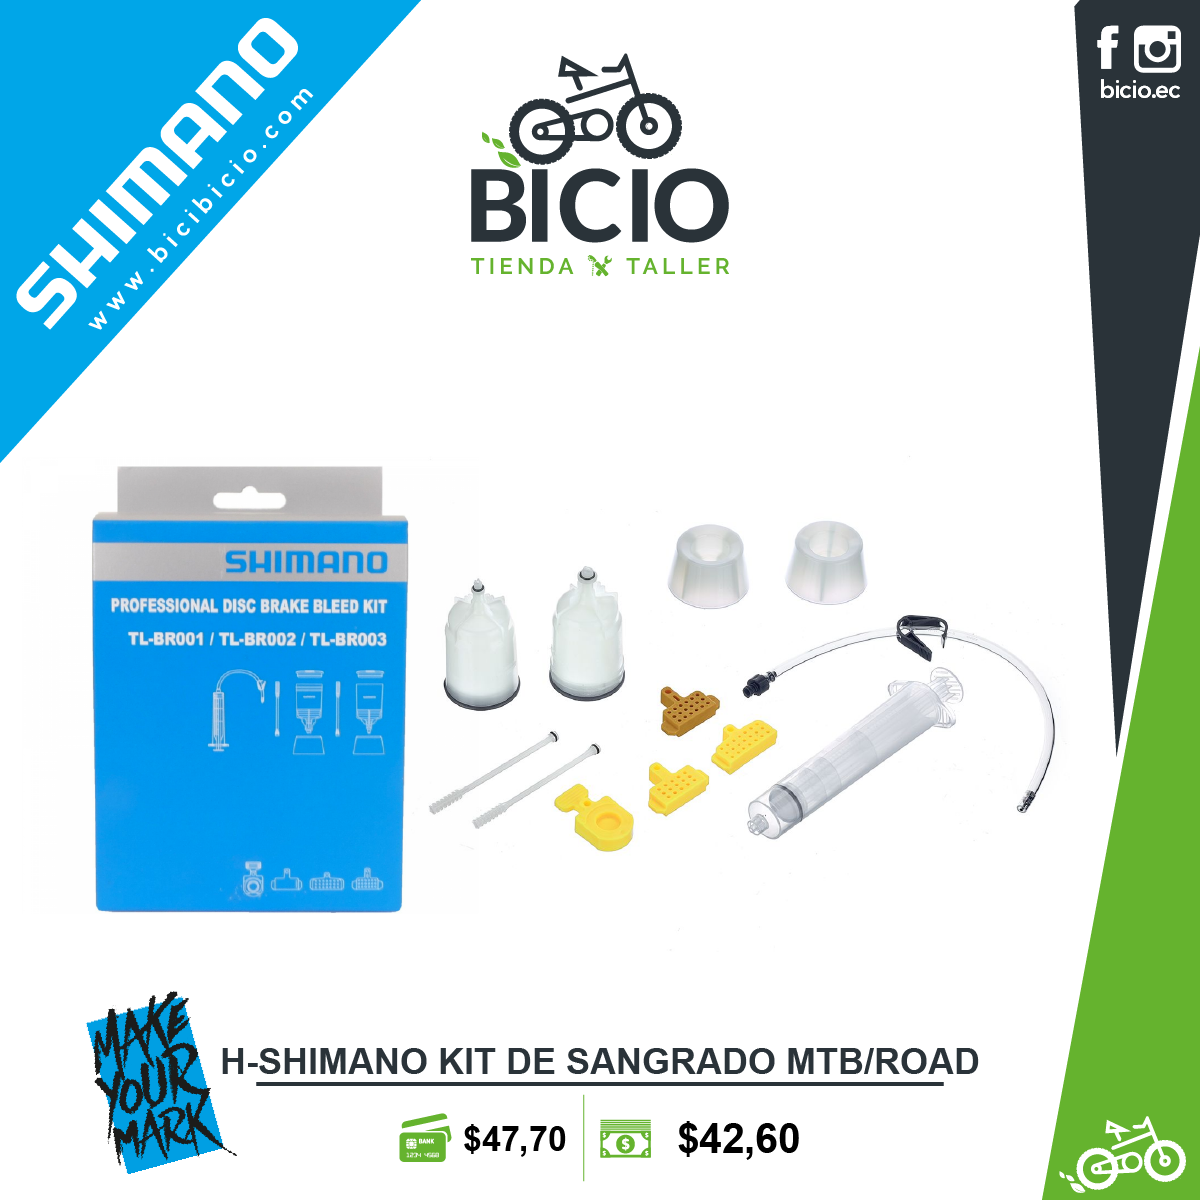 kit de sangrado MTB/Road SHIMANO - Bicio tienda - taller de bicicletas